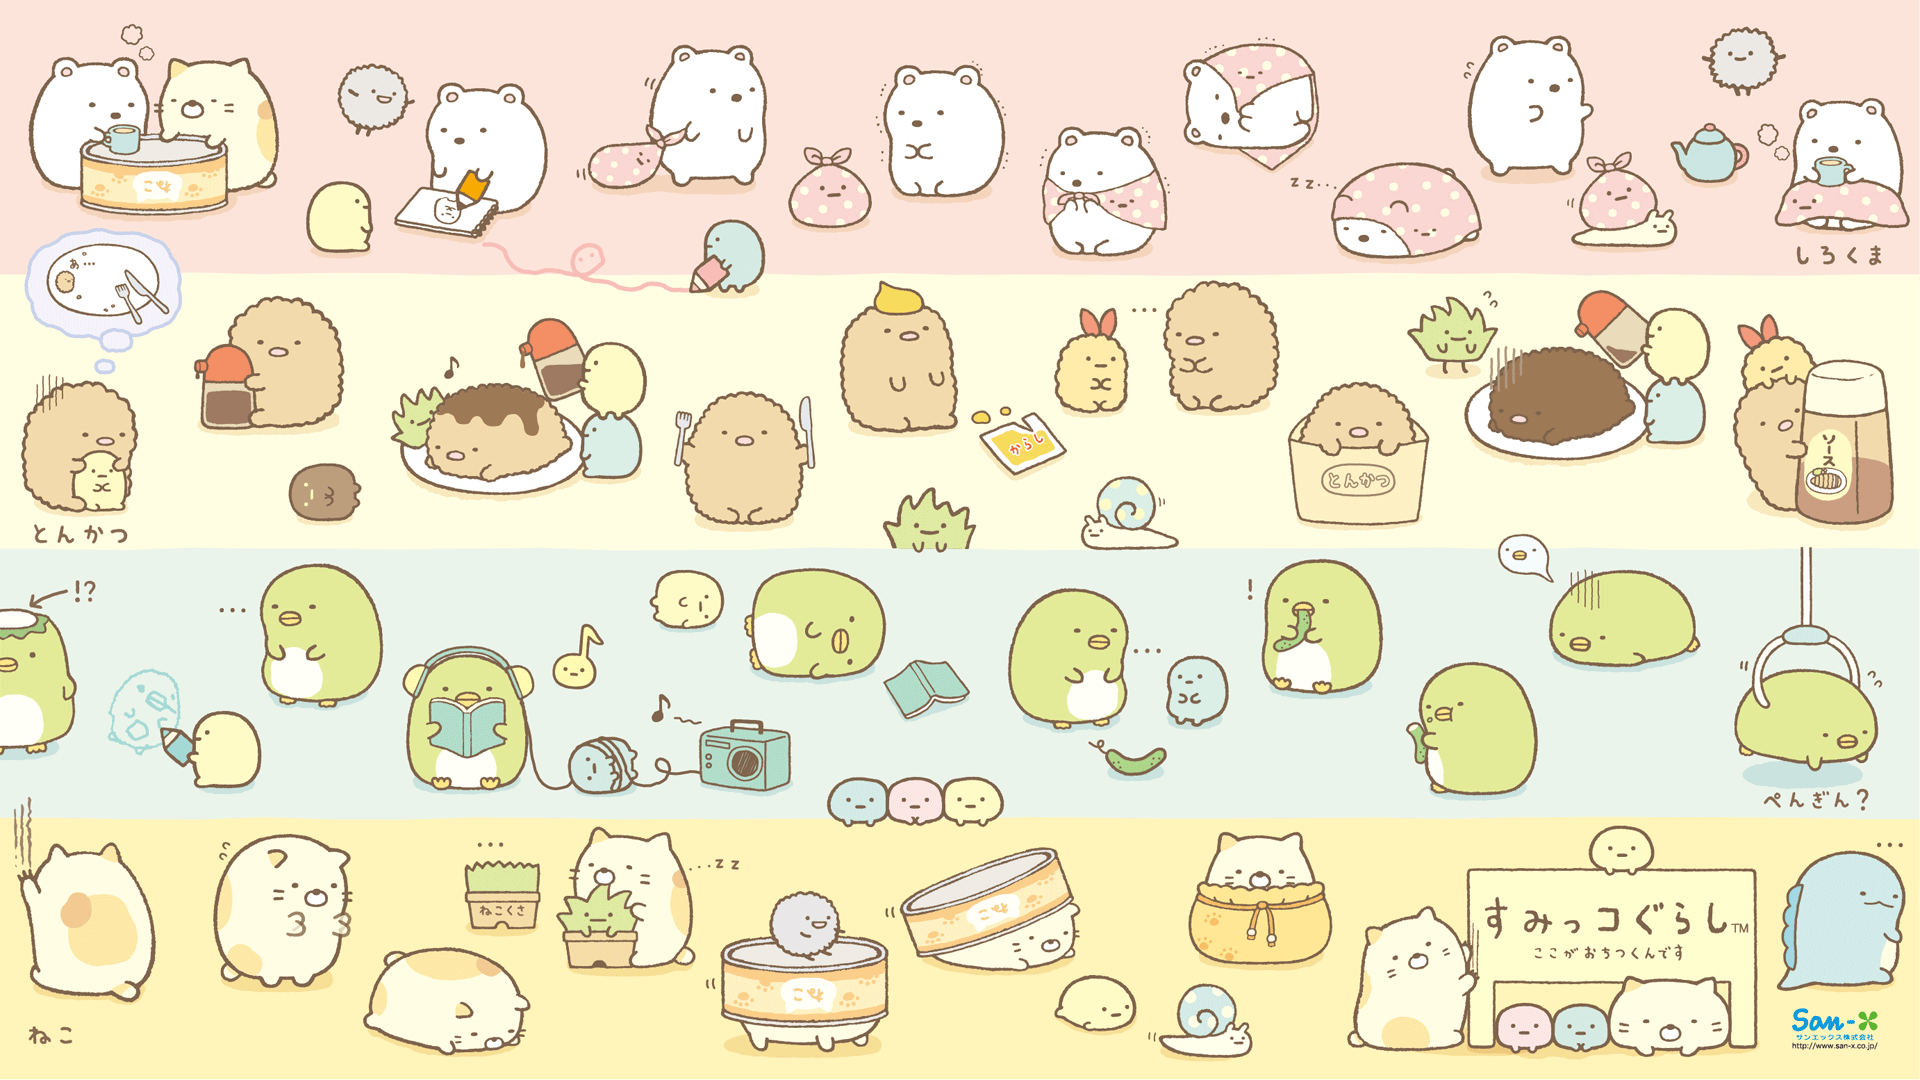 Cute San X Wallpaper Collection Rilakkuma Nyan Cat